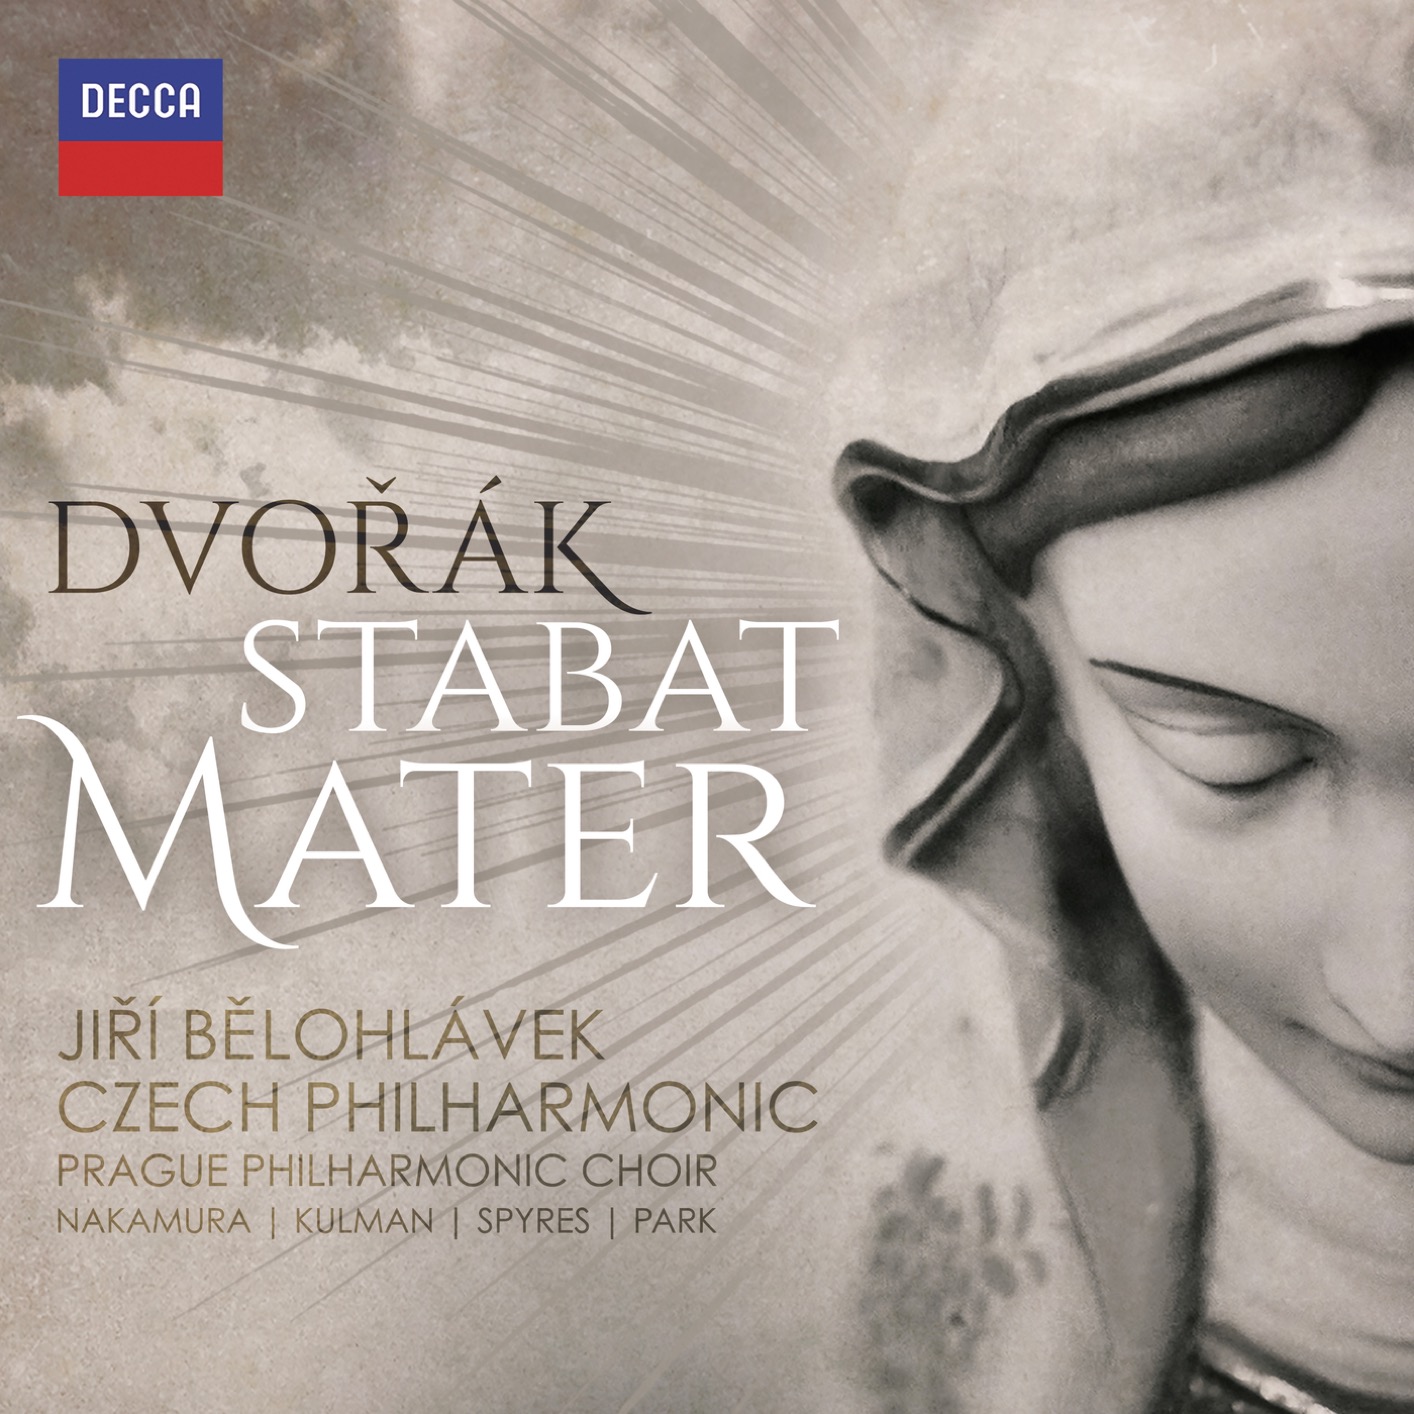 Czech Philharmonic & Jiri Belohlavek - Dvorak: Stabat Mater, Op.58, B.71 (2017) [Qobuz FLAC 24bit/96kHz]